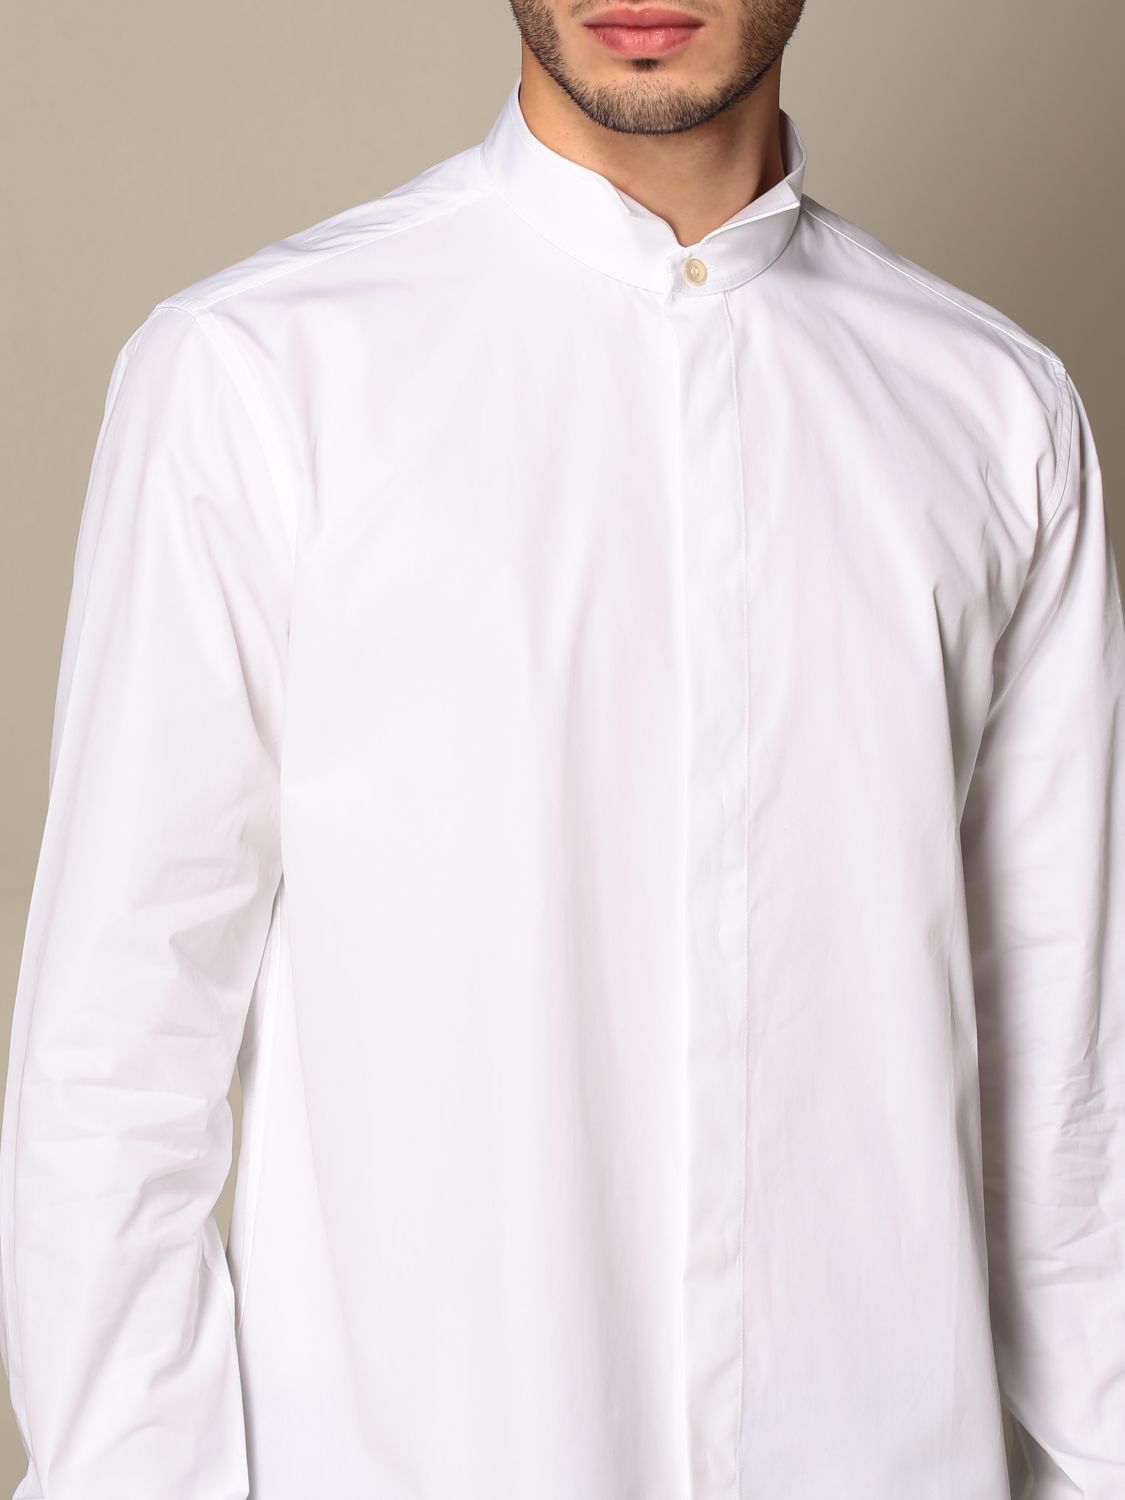 Shirt Saint Laurent White size 39 EU (tour de cou / collar) in